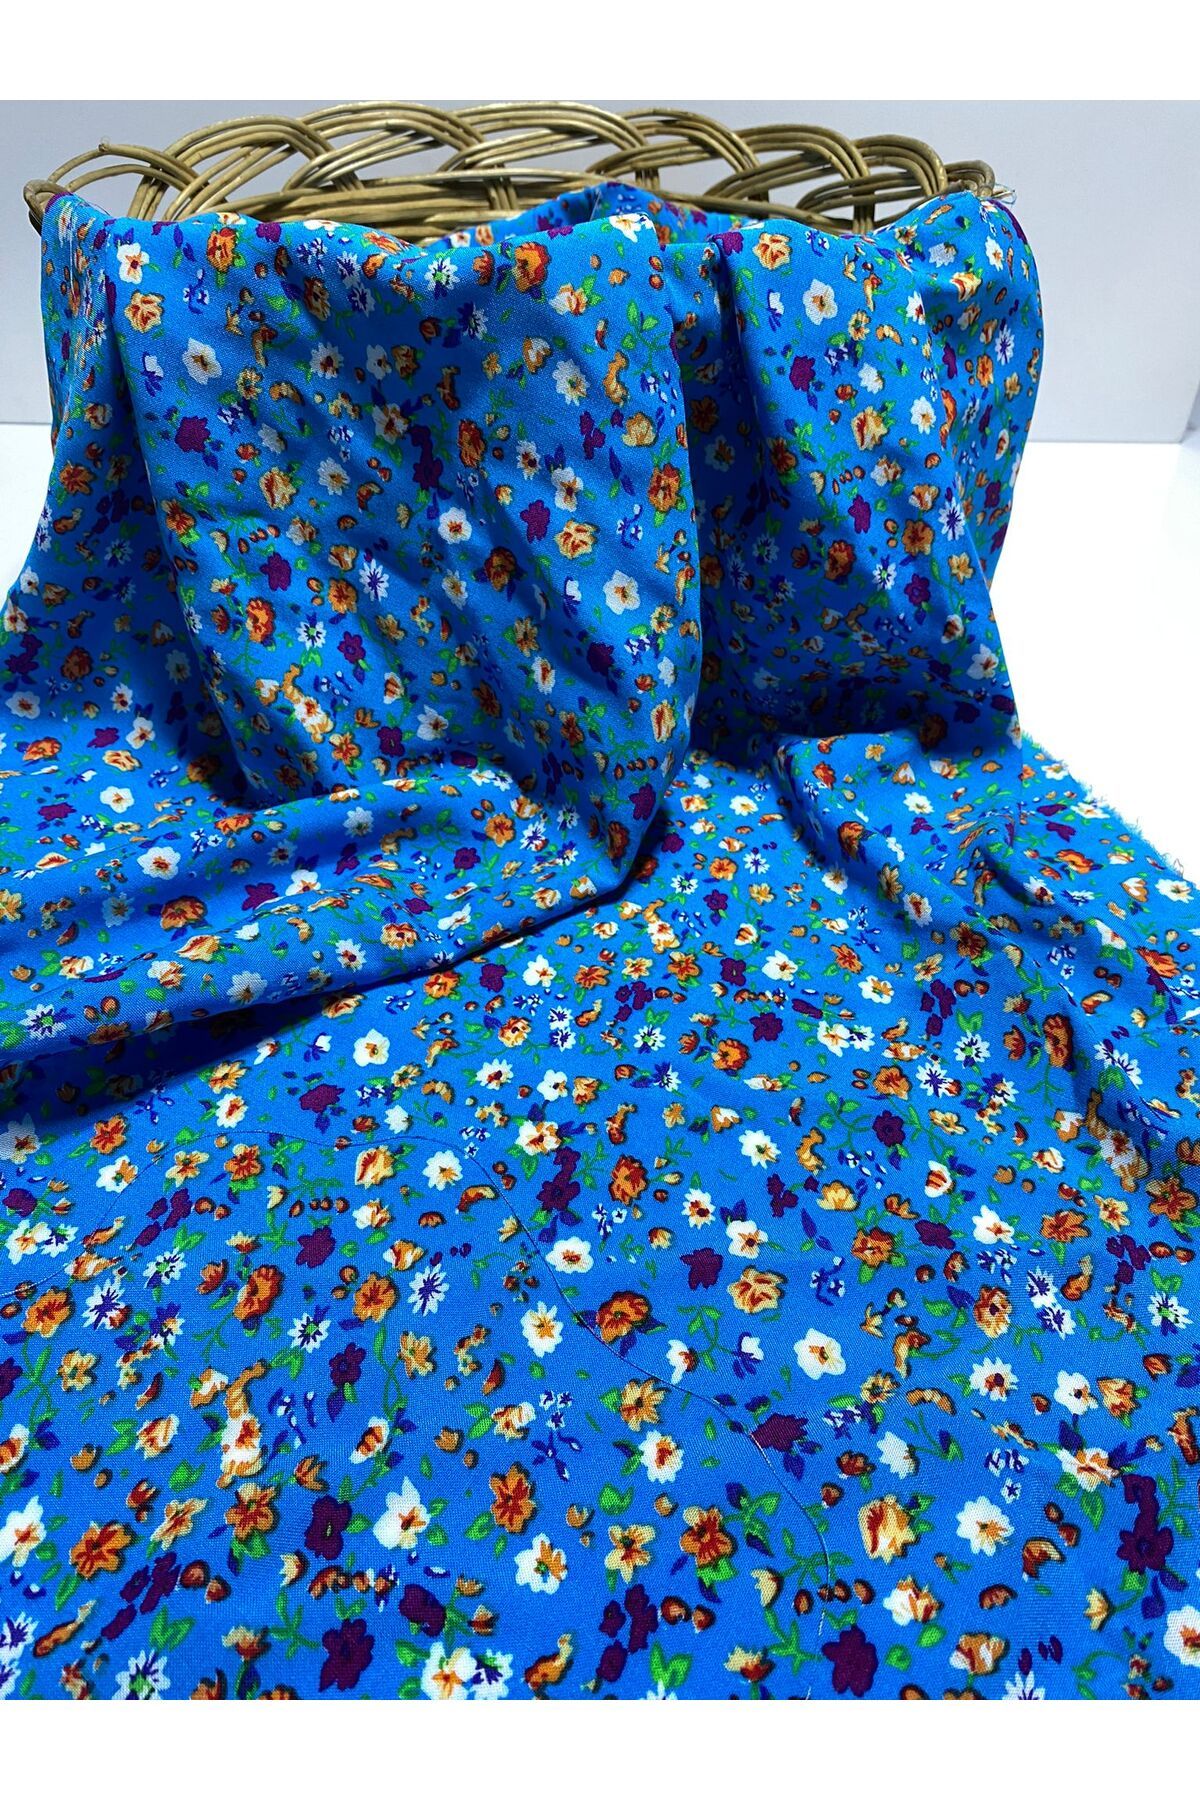 BURSA KUMAŞTAN En150 X100 Renkli Pamuk Viskon Kumaş Elbiselik, Şalvarlık, Eteklik, Bluz Ve Gömleklik Dökümlü